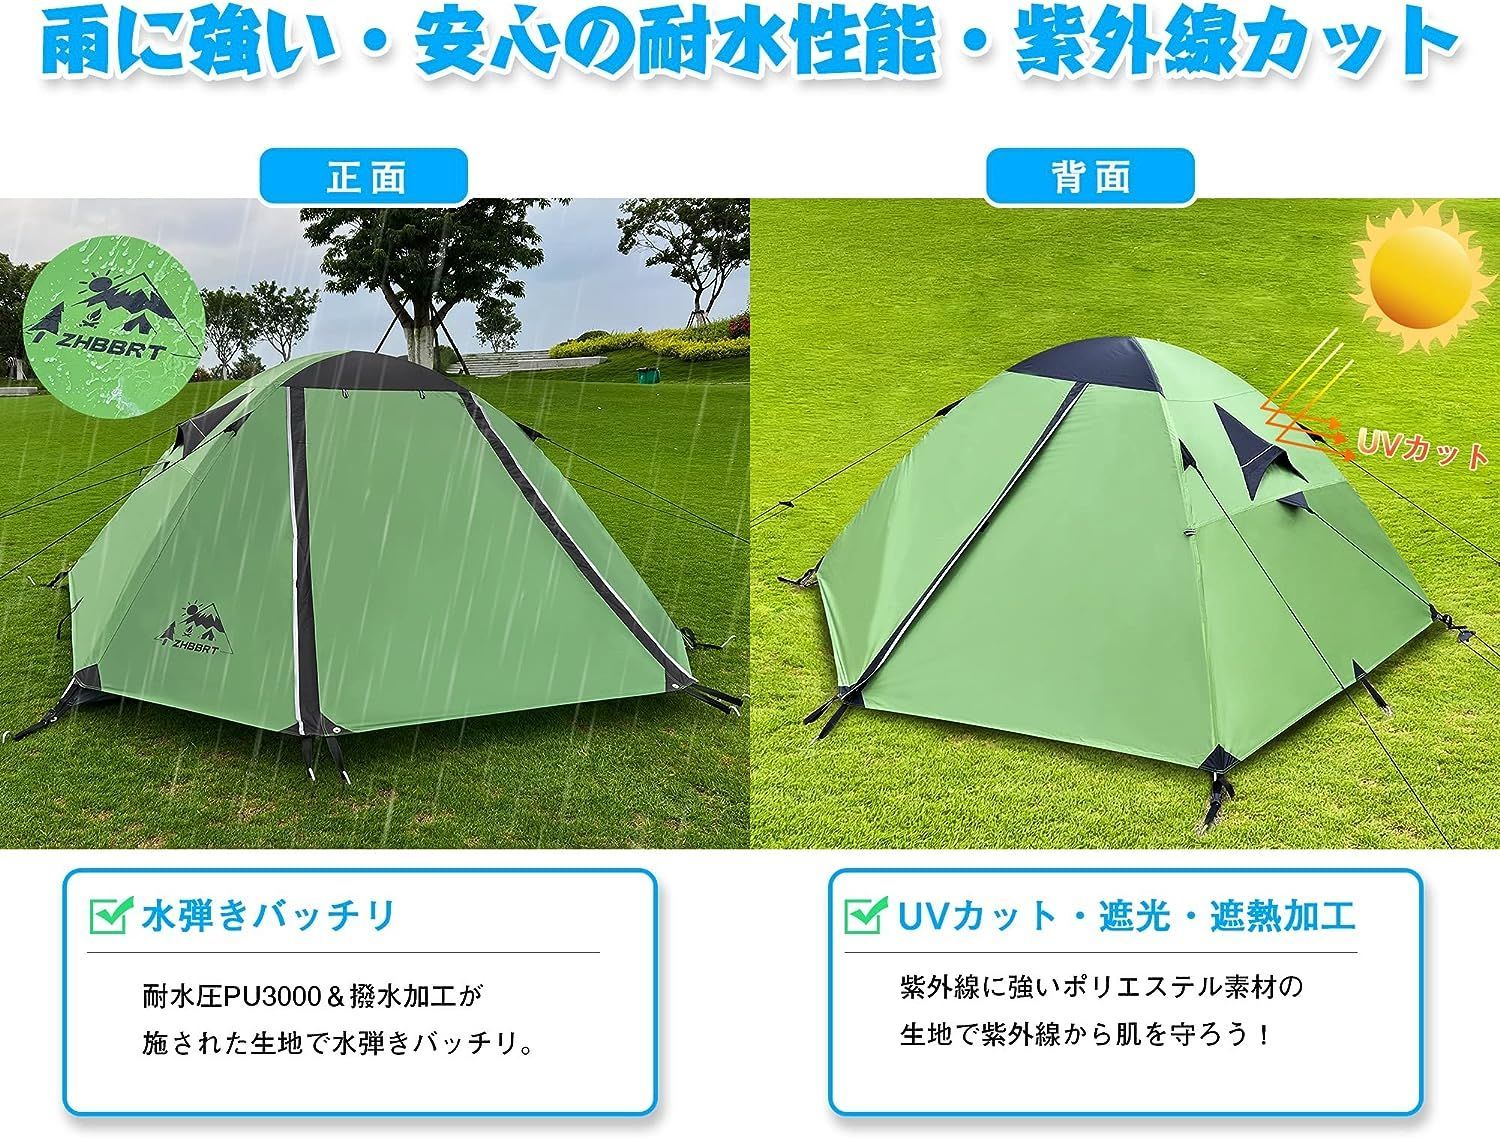 ZHBBRT テント 2人用 ドームテント ツーリングドーム キャンプテント 